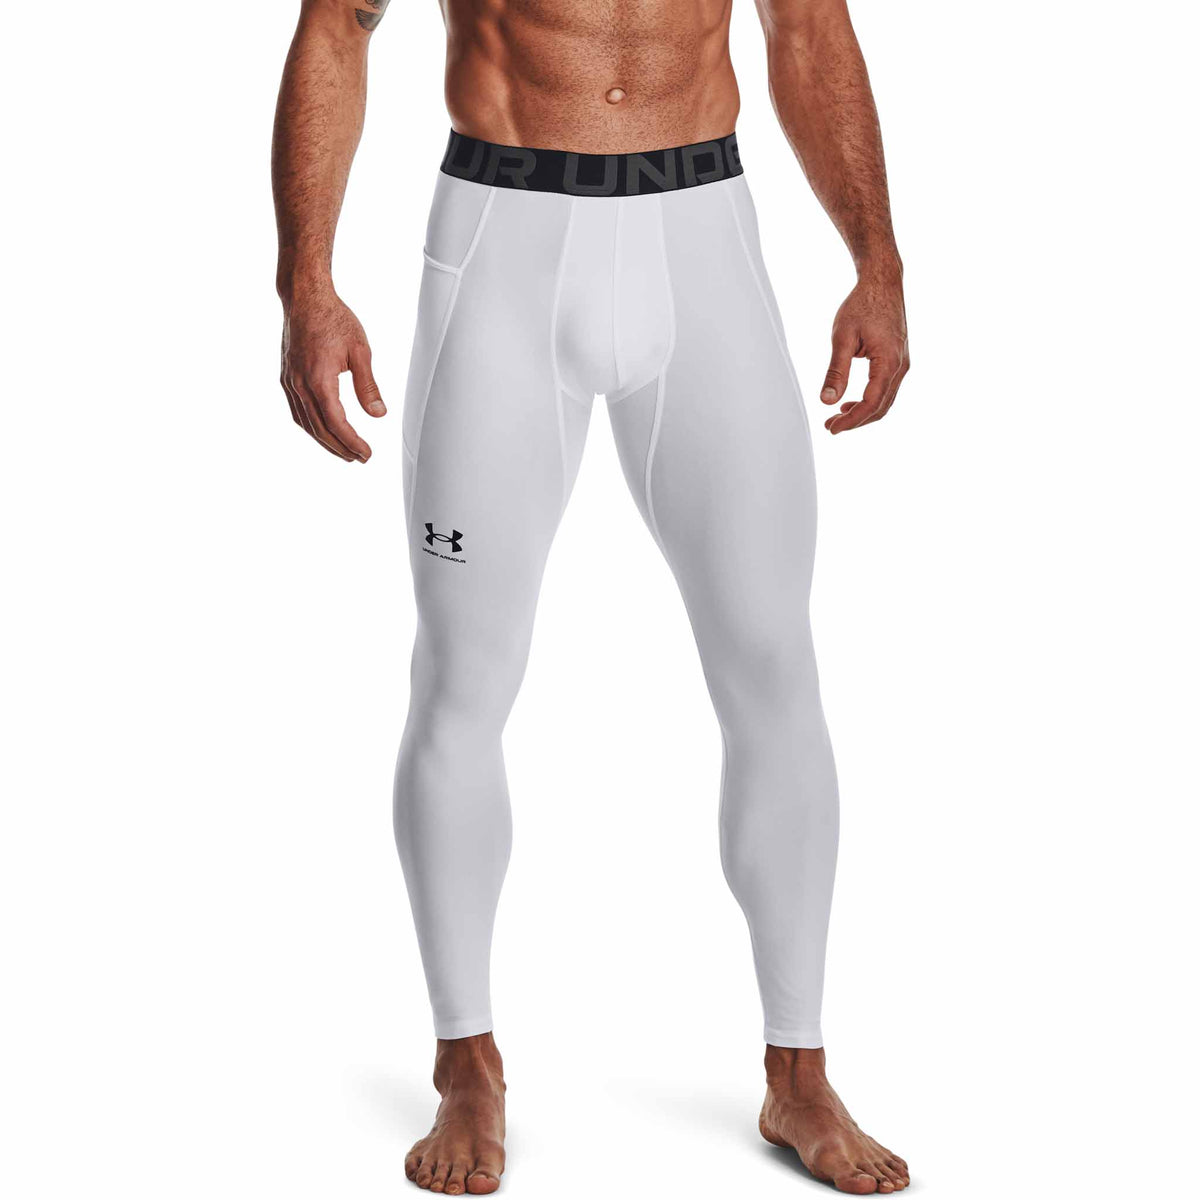 Under Armour HeatGear Armour Leggings pantalons de compression pour homme - White / Black